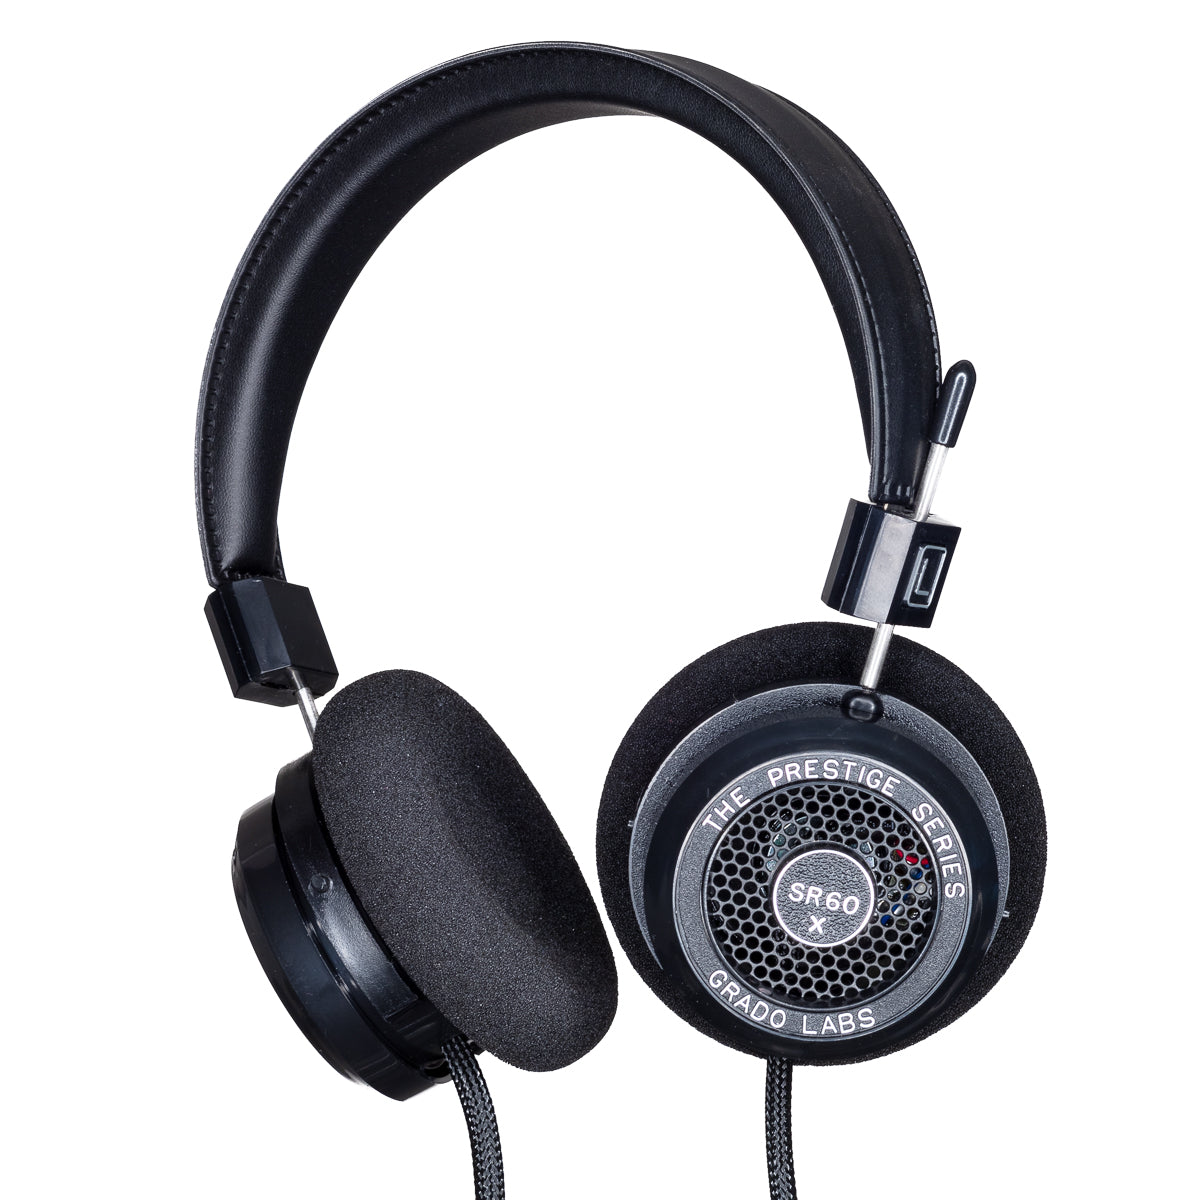 SR60x-Headphones-4OurEars